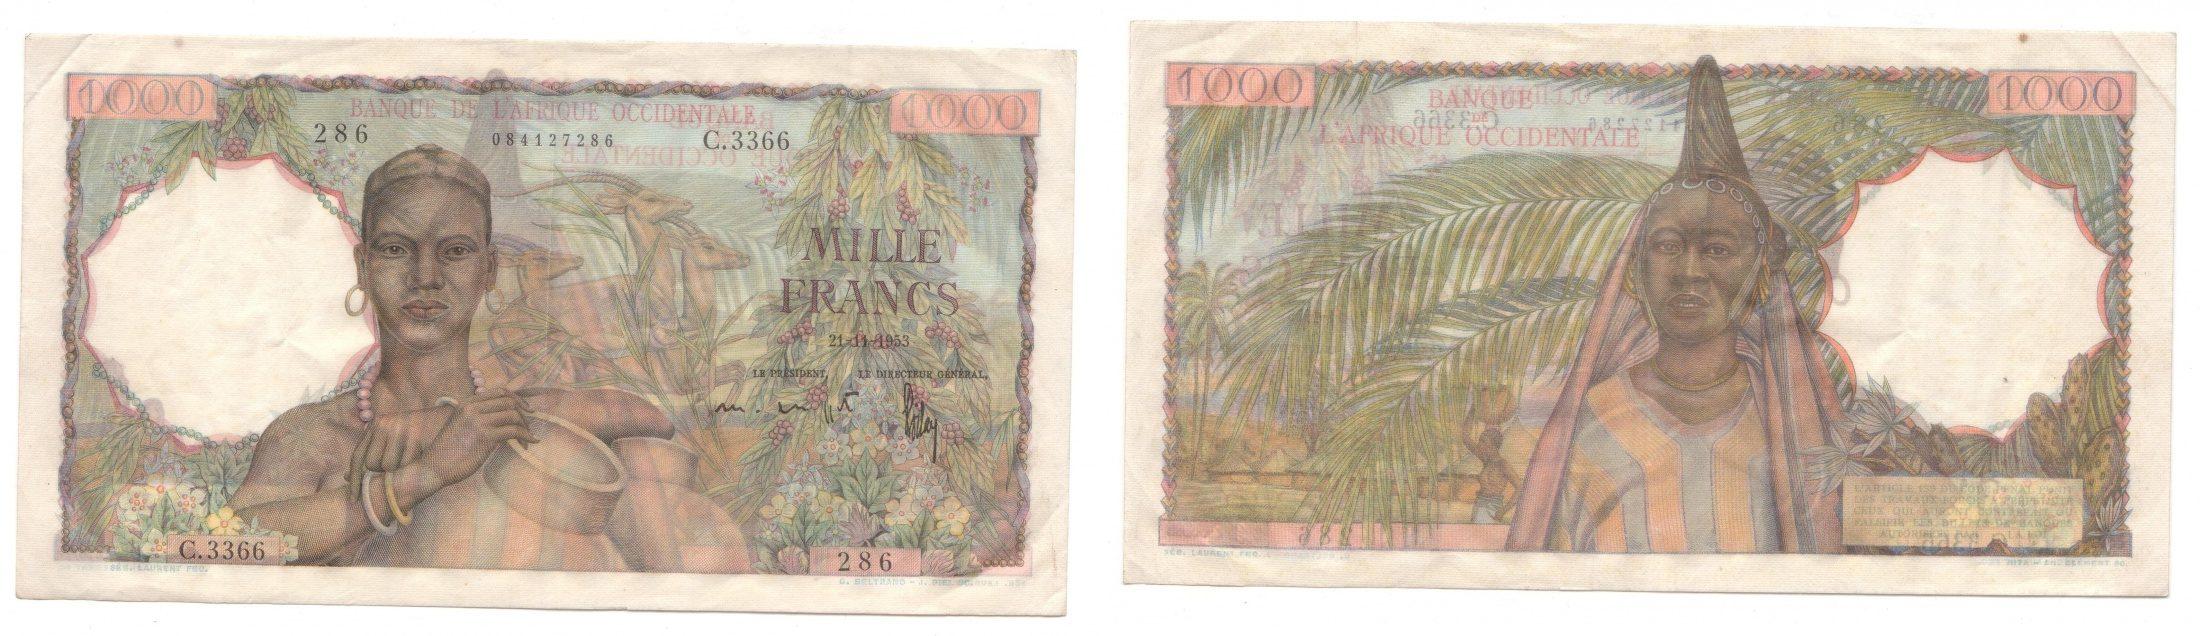 Foto Afrique Occidentale Française 1 000 Francs 22/11/1953 foto 202141